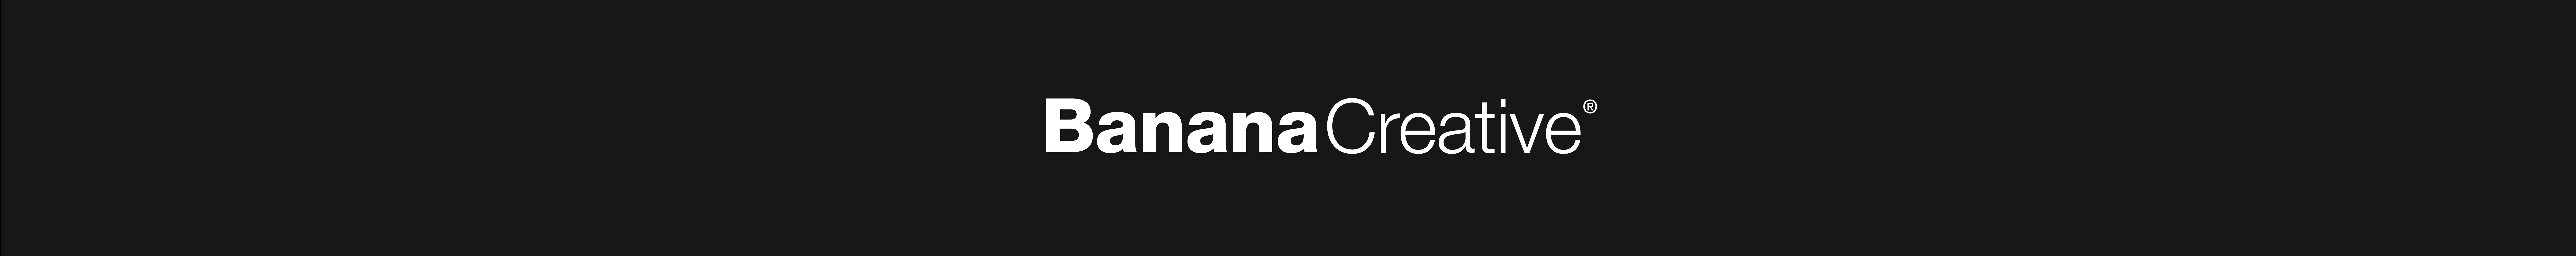 Banana Creative's profile banner